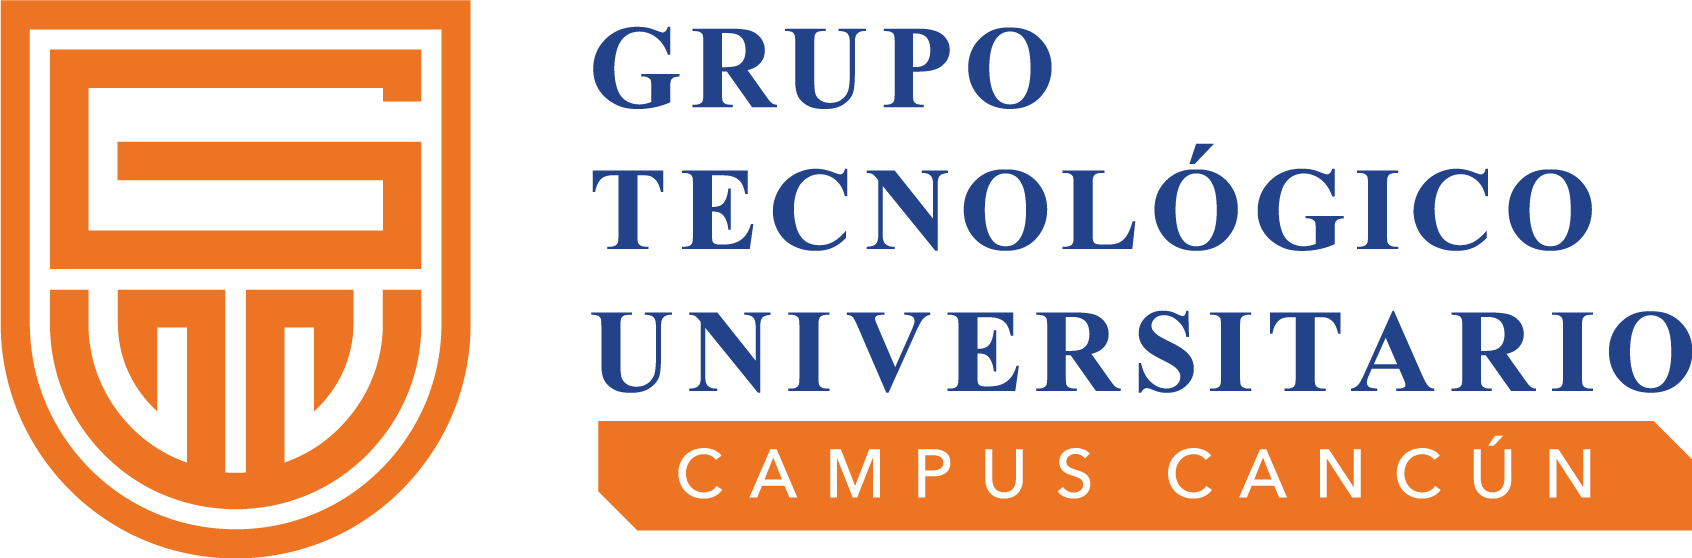 Grupo Tecnológico Universitario – Campus Cancún